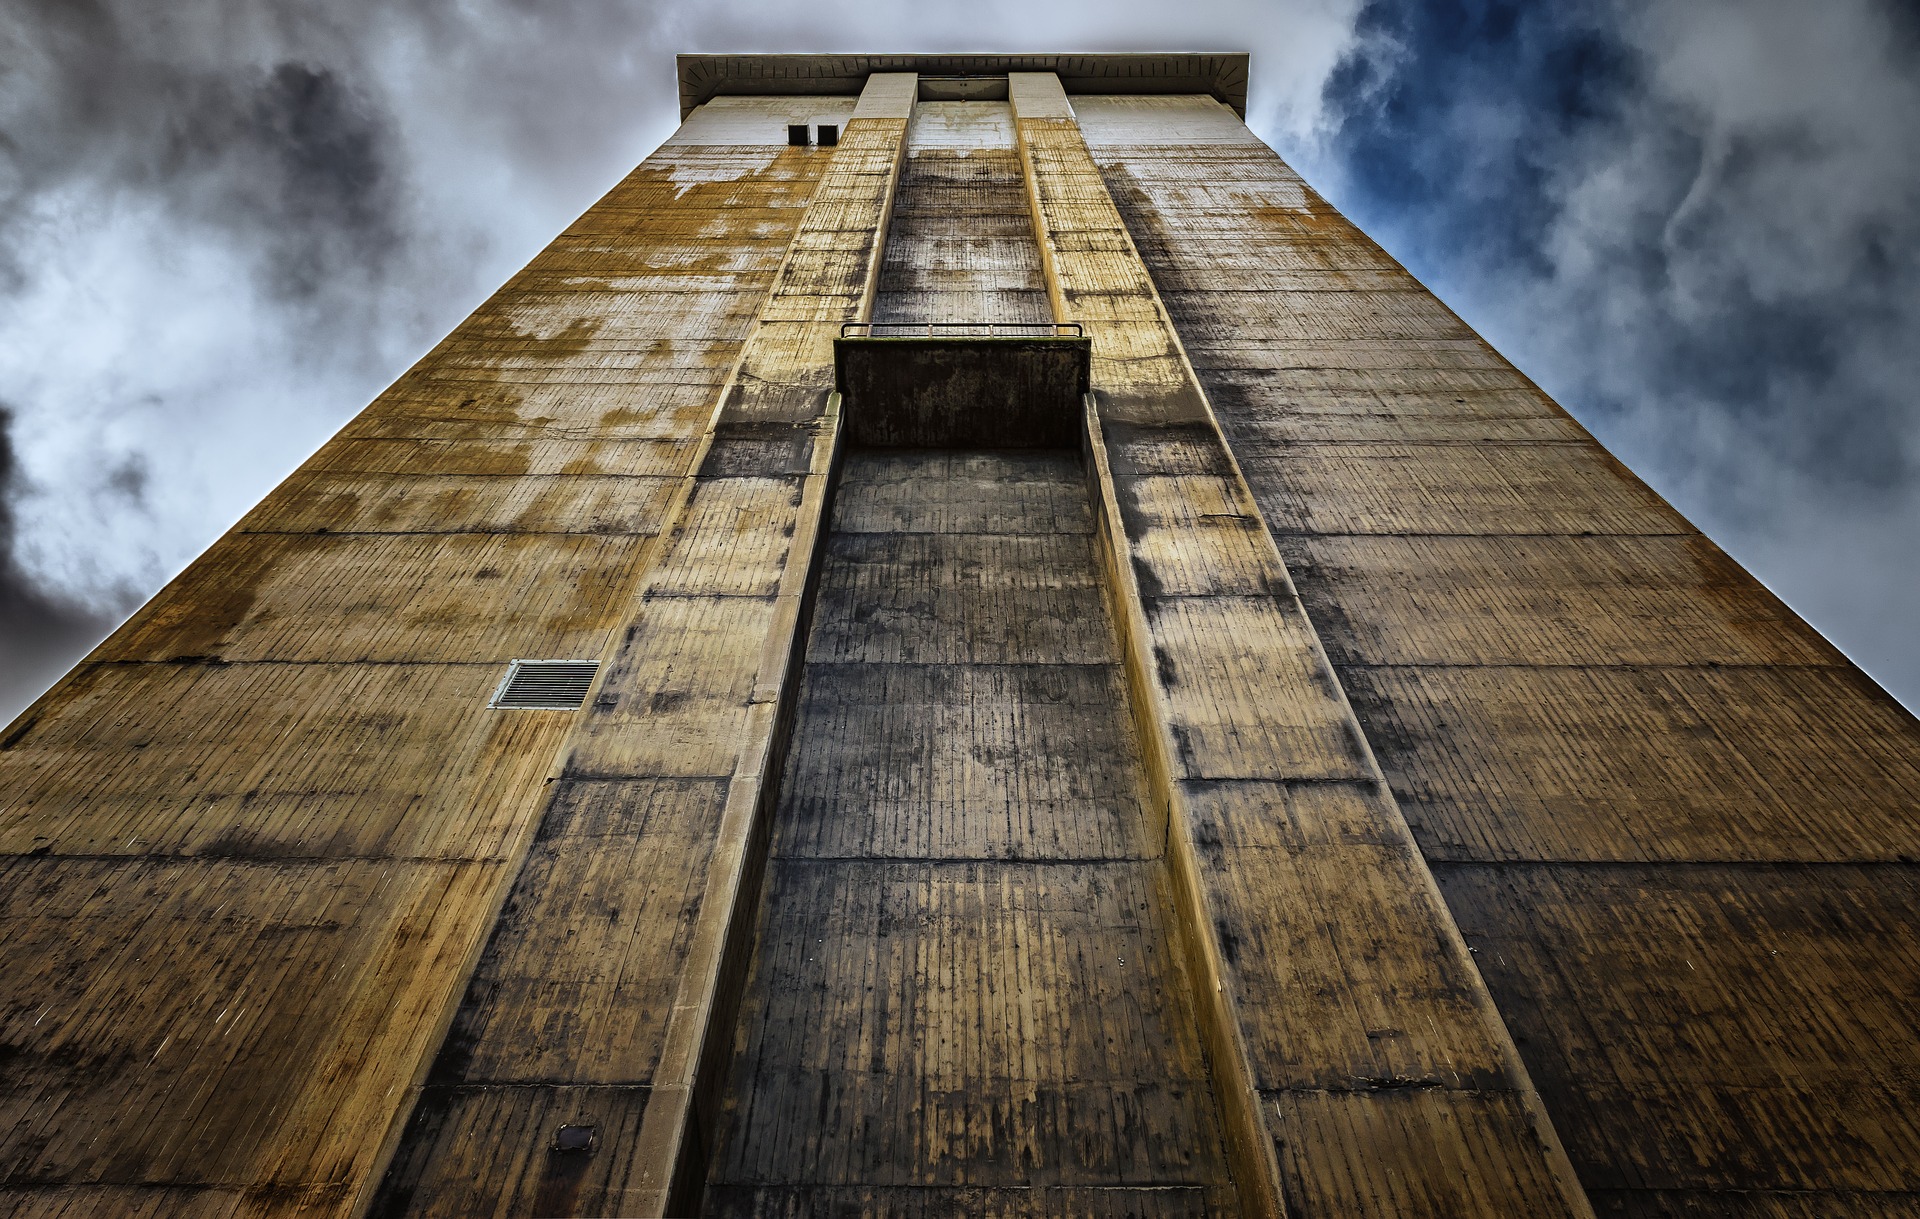 Turmbau zu Babel (Peter H auf www.pixabay.com)